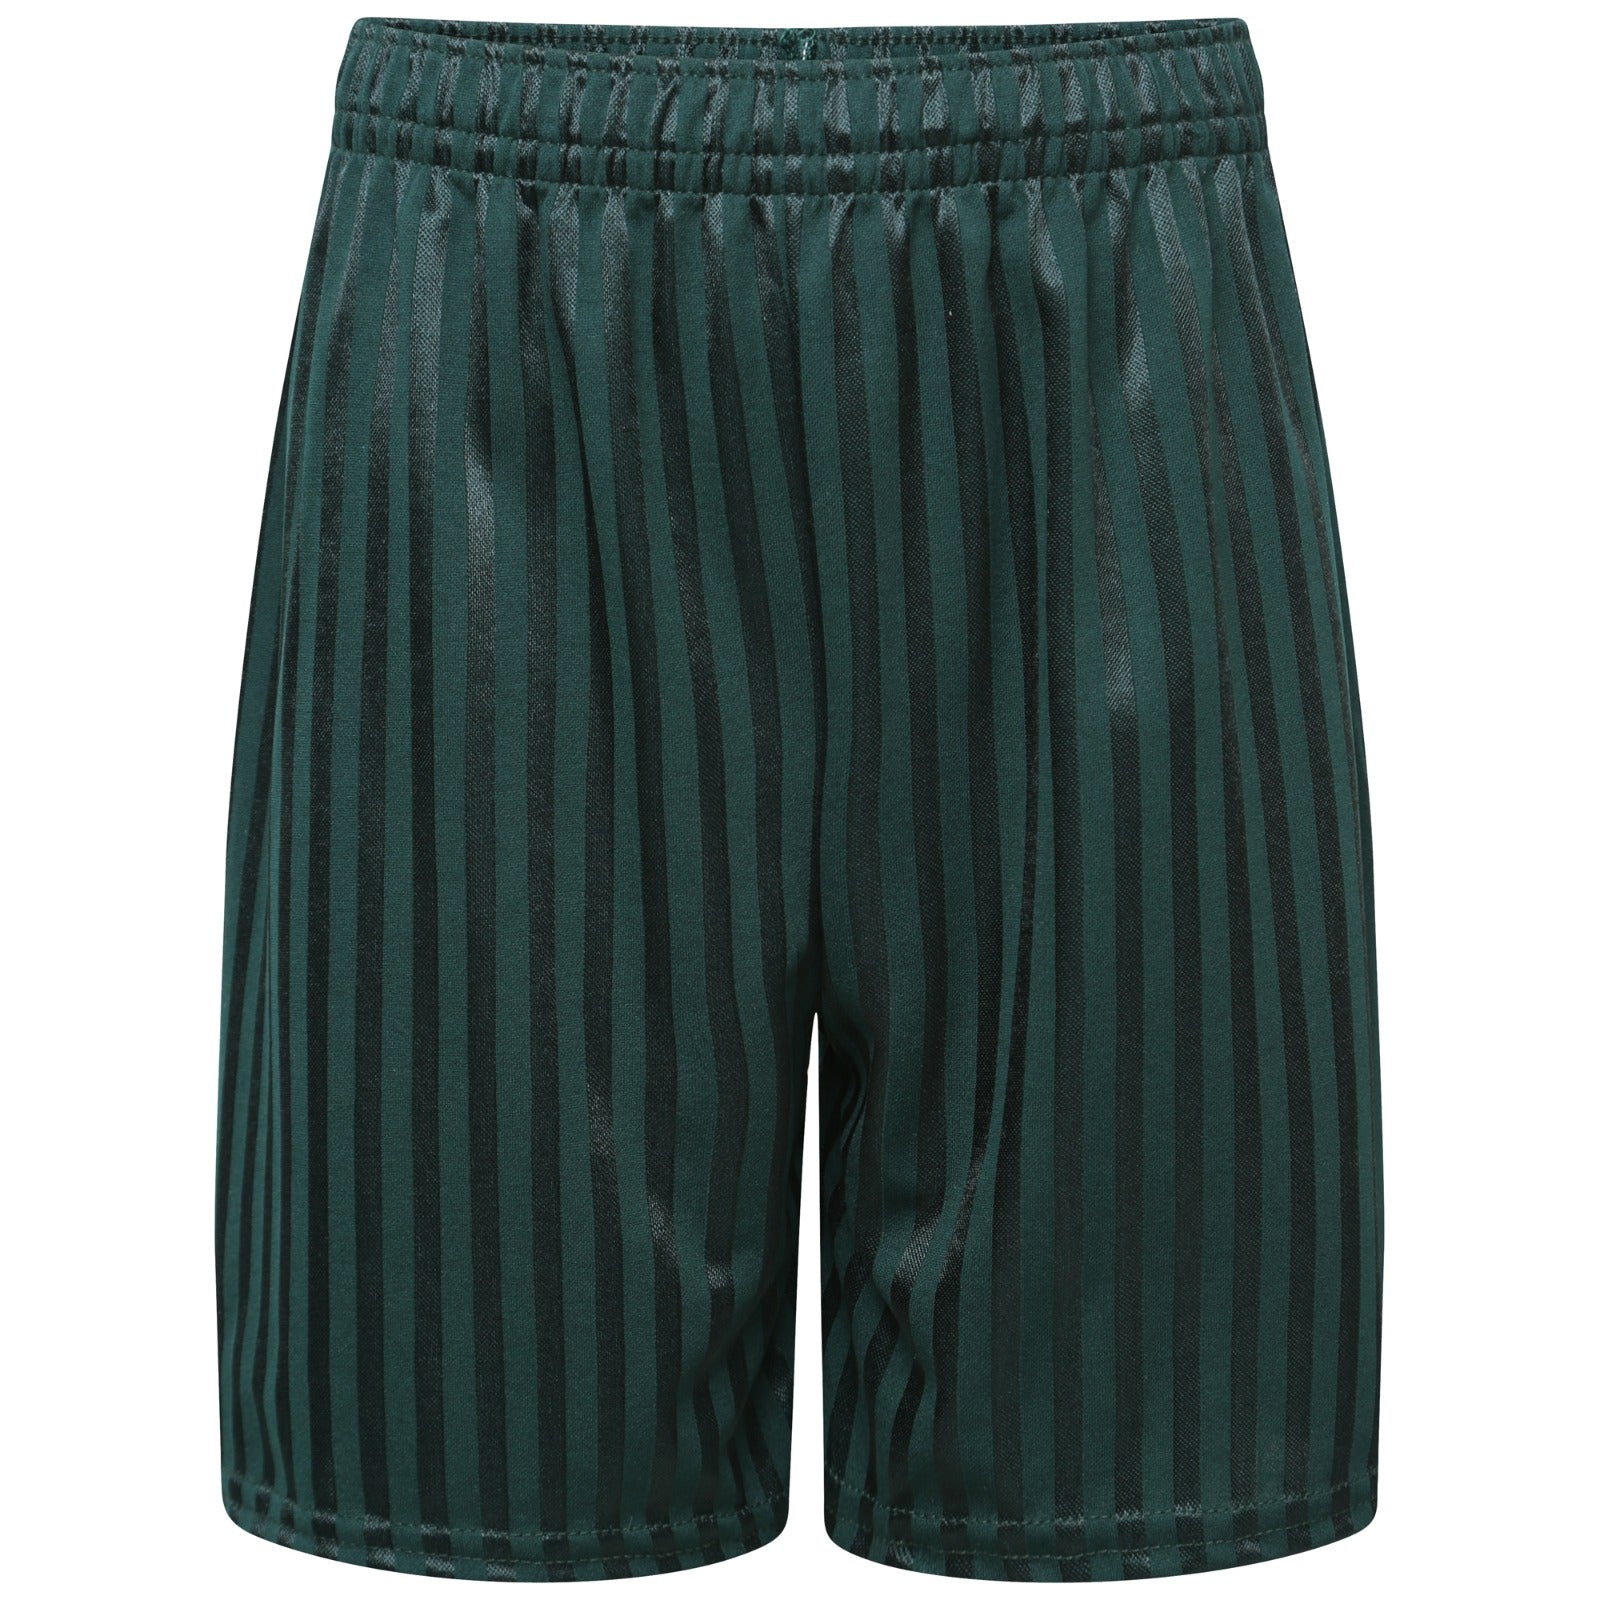 School Shadow Stripe Shorts Boys Girls Adult Football Gym Sports Short Green Unisex Pe Machine Washable